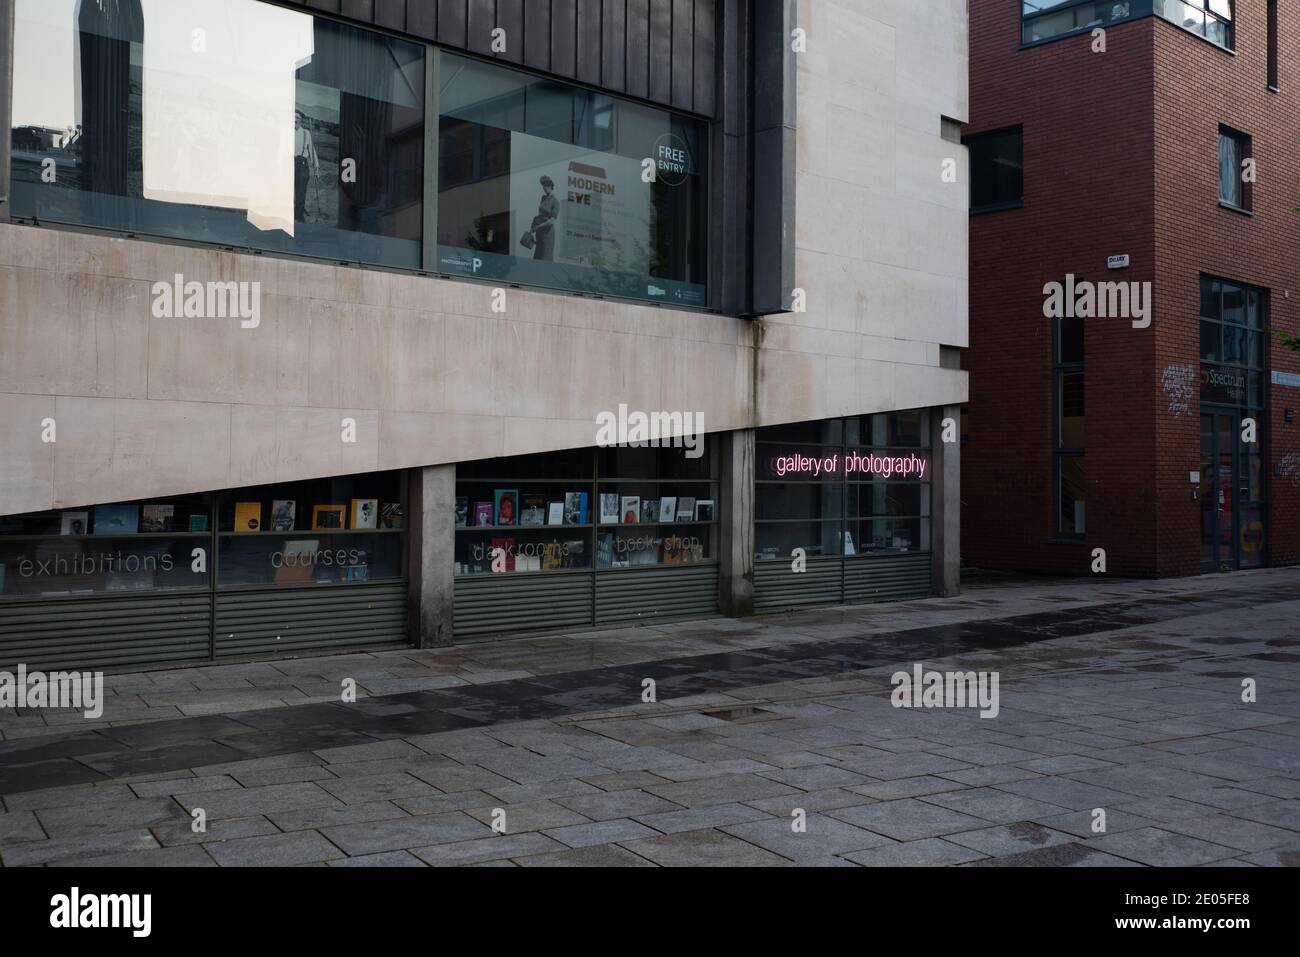 La Galerie de la photographie de Dublin, Irlande. Banque D'Images